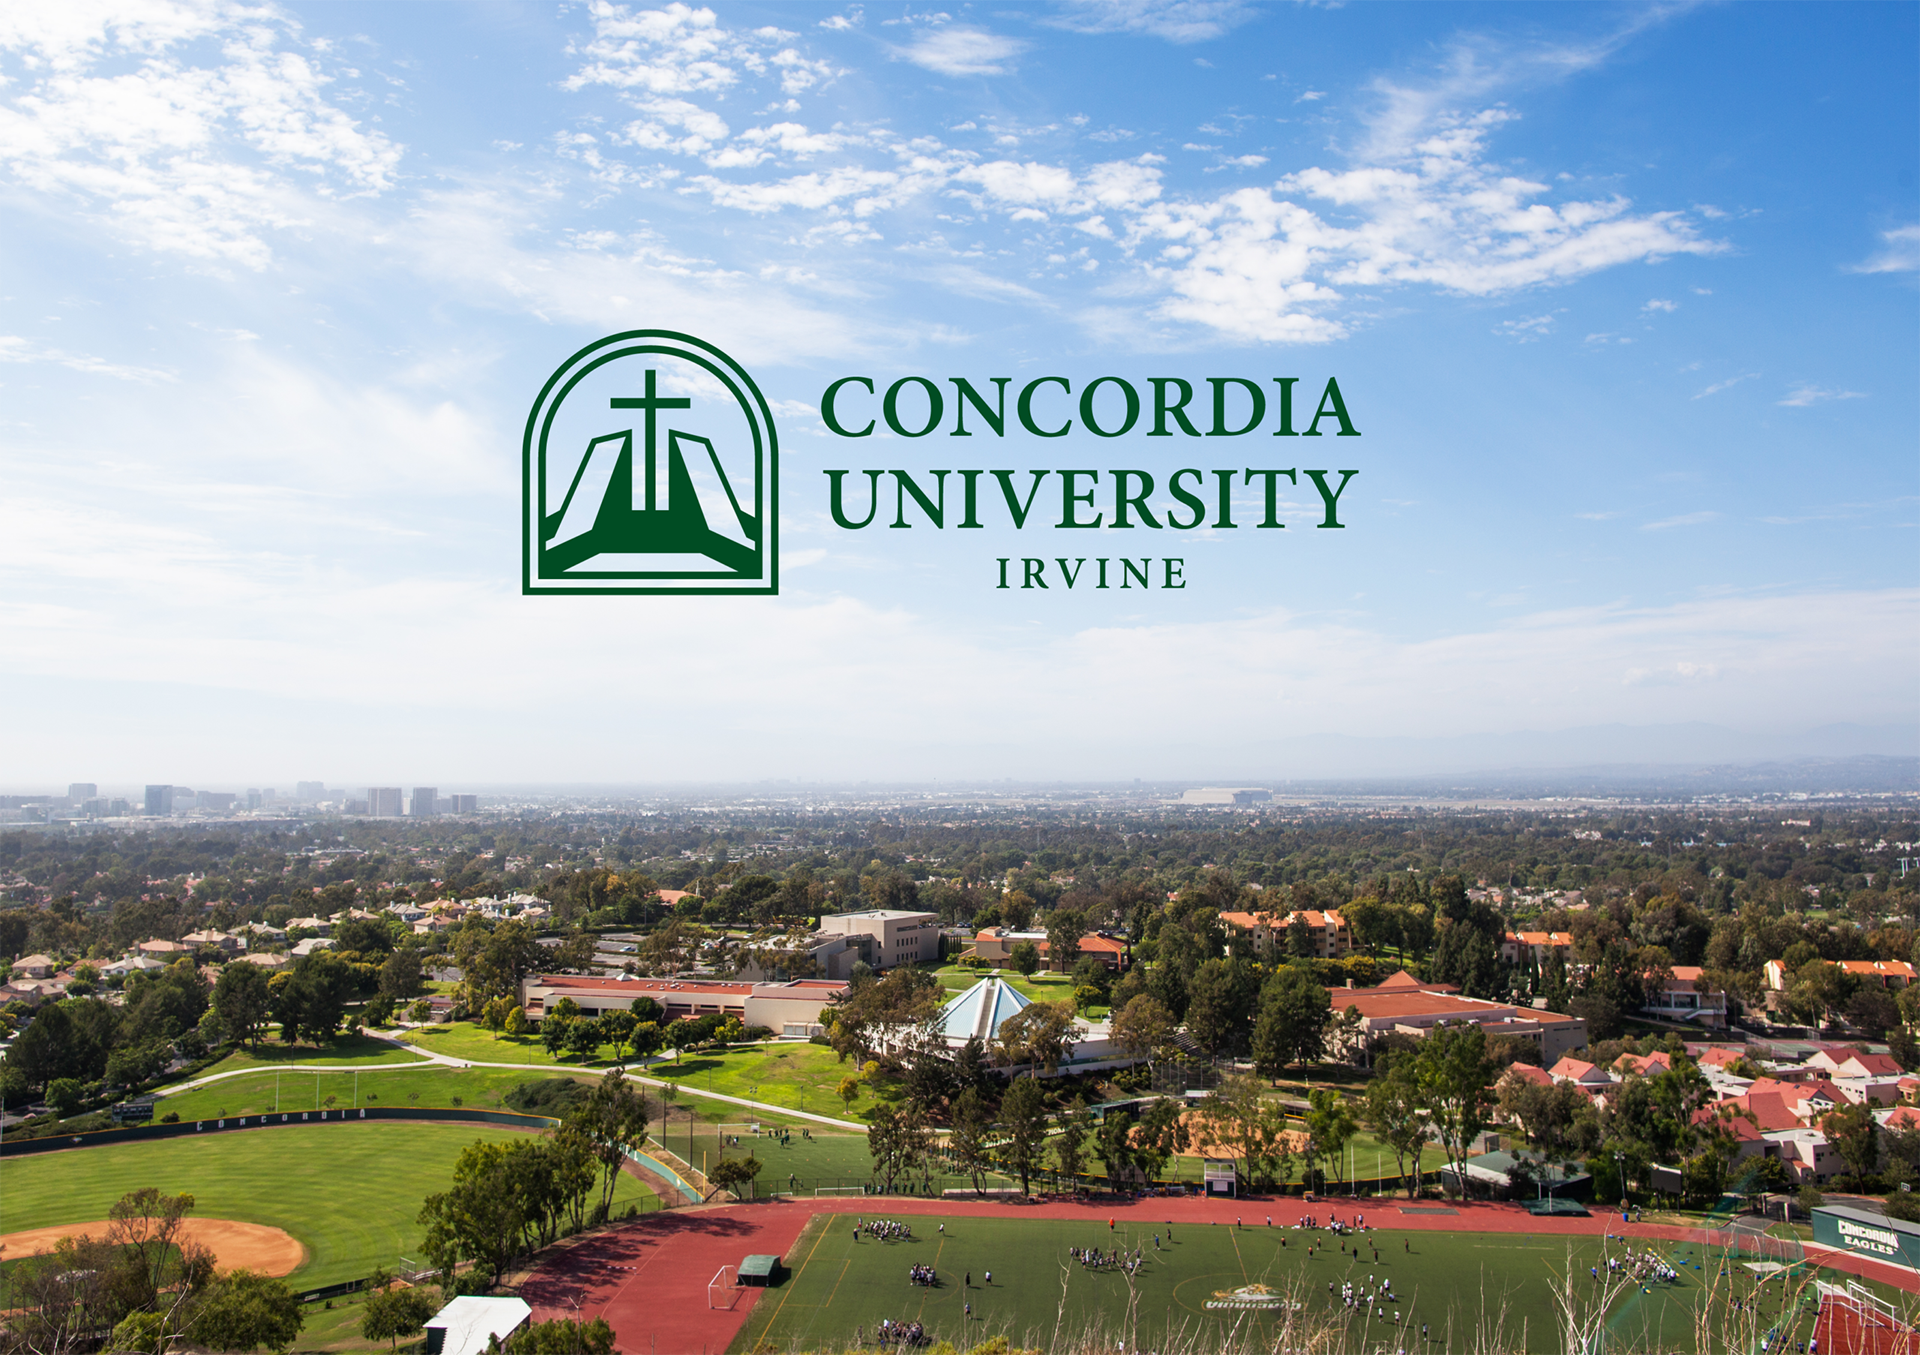 Aerial photo of Concordia University Irvine campus with institution logo